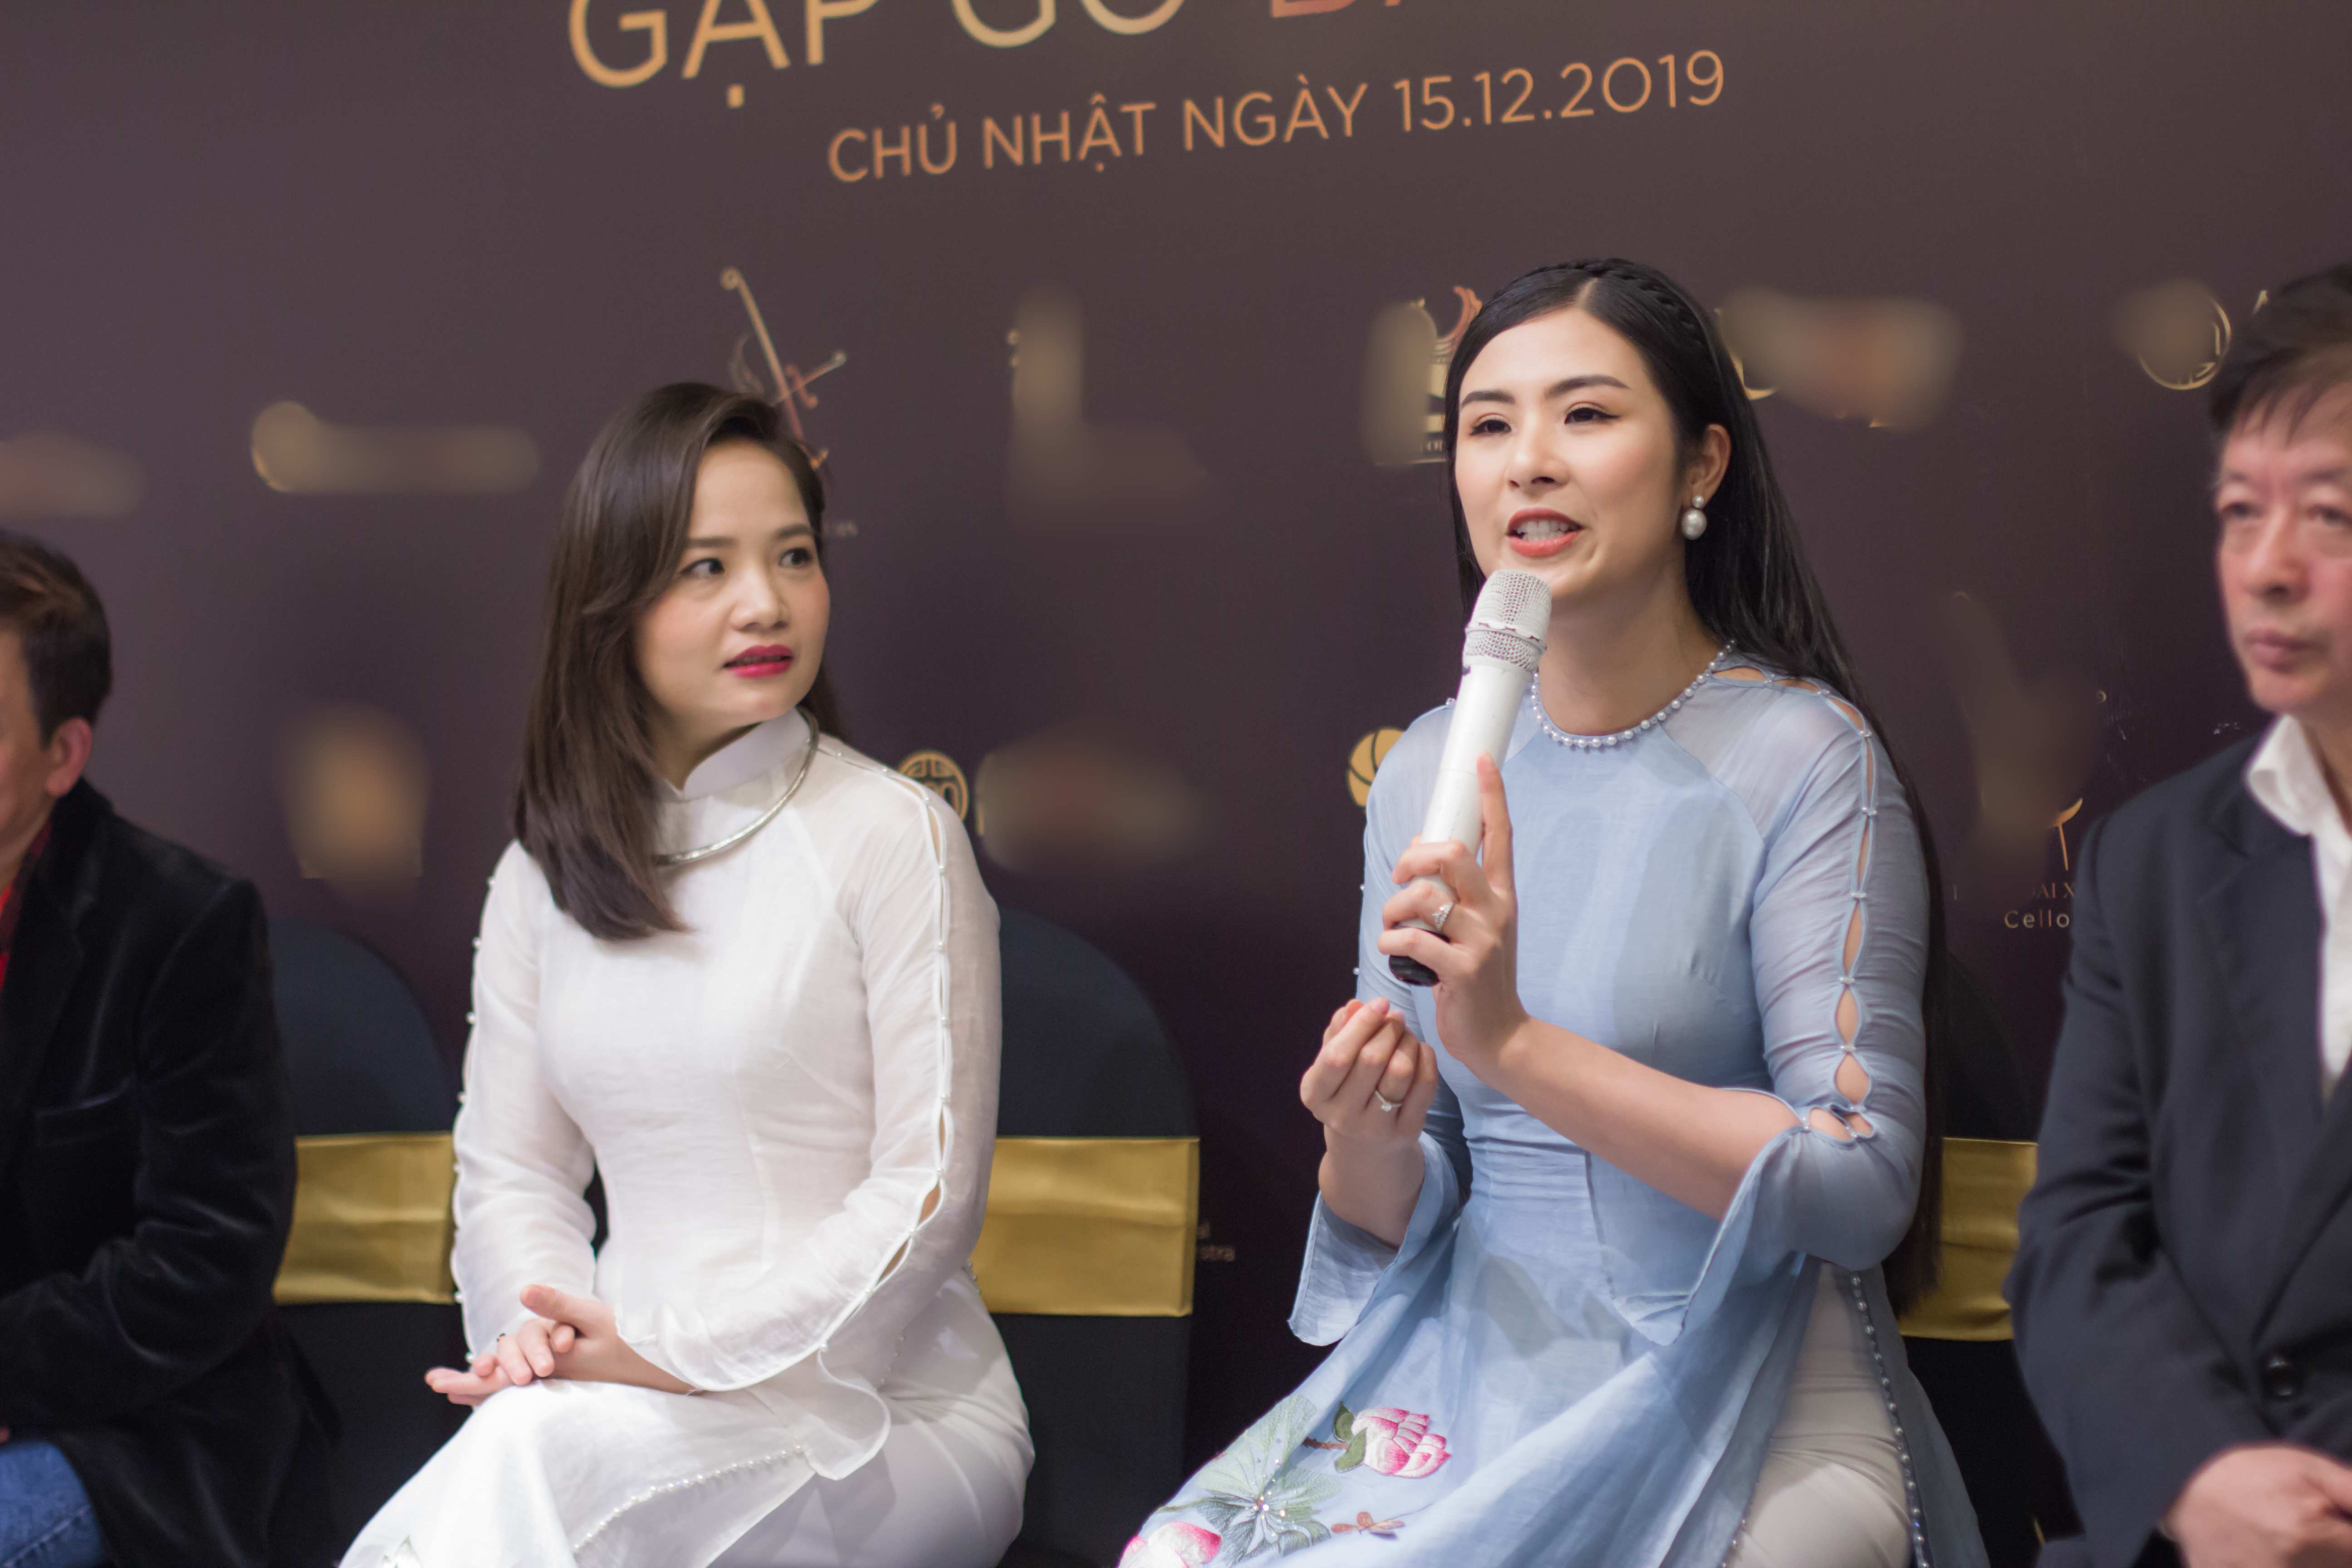 Hoa hậu Ngọc Hân có mặt trong buổi họp báo cùng nghệ sĩ Đinh Hoài Xuân và các khách mời.&nbsp;